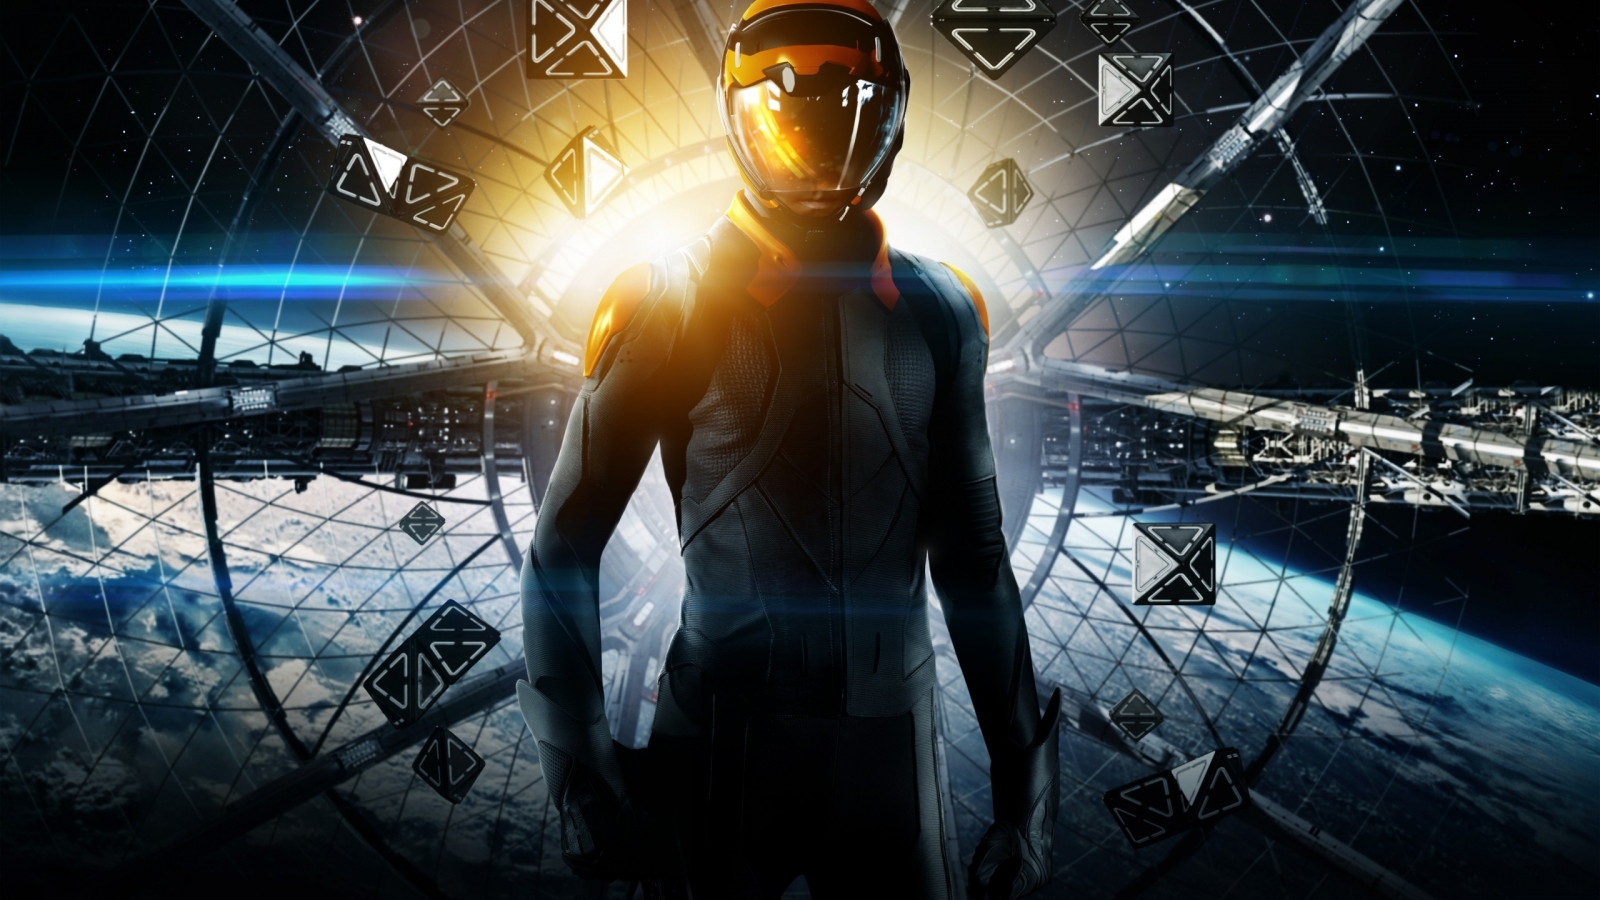 Ender's Game Poster for 1600 x 900 HDTV resolution